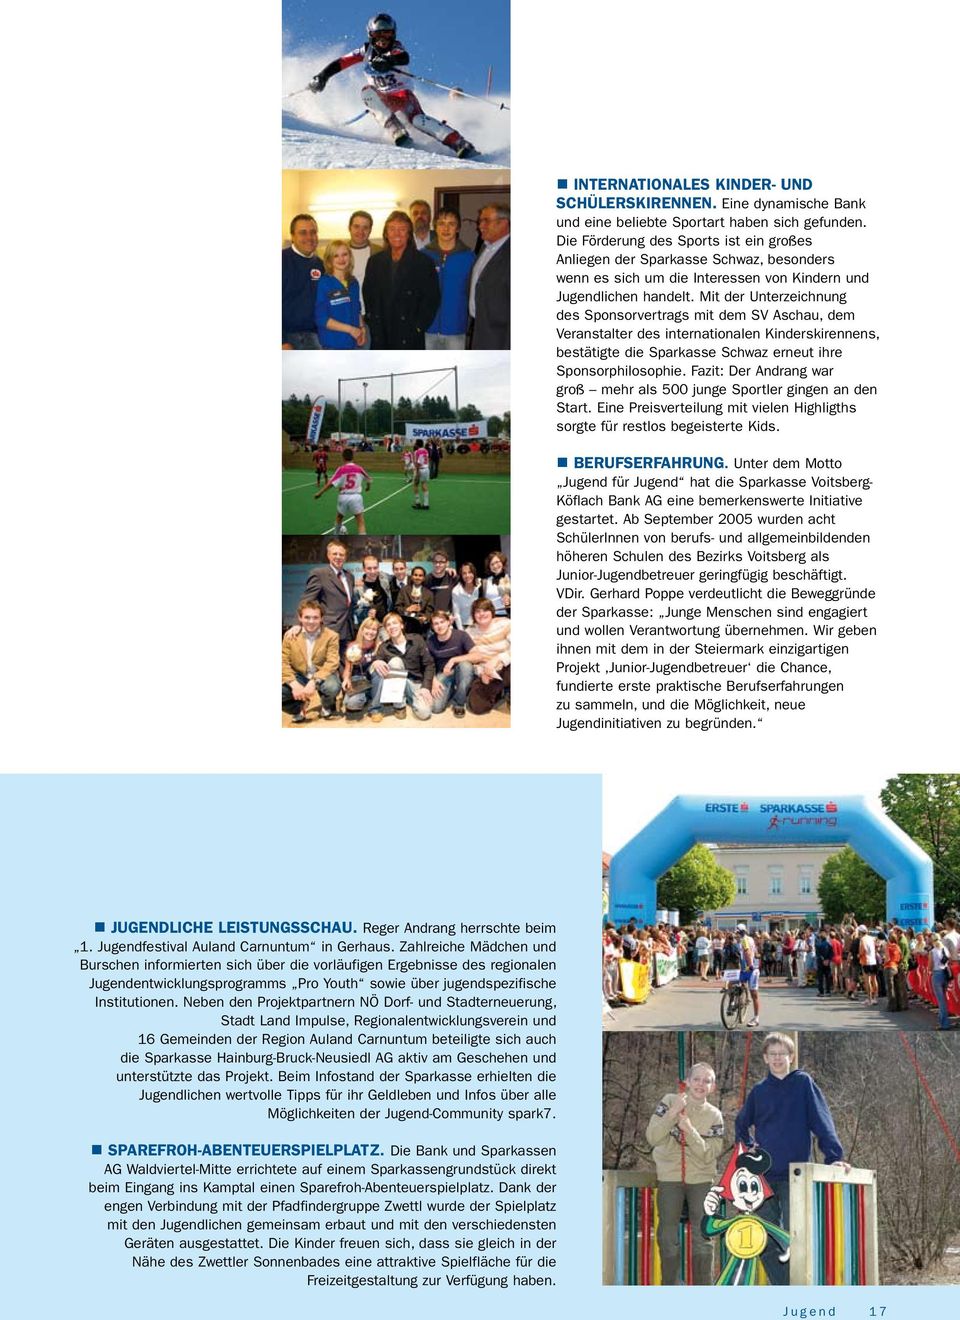 Mit der Unterzeichnung des Sponsorvertrags mit dem SV Aschau, dem Veranstalter des internationalen Kinderskirennens, bestätigte die Sparkasse Schwaz erneut ihre Sponsorphilosophie.